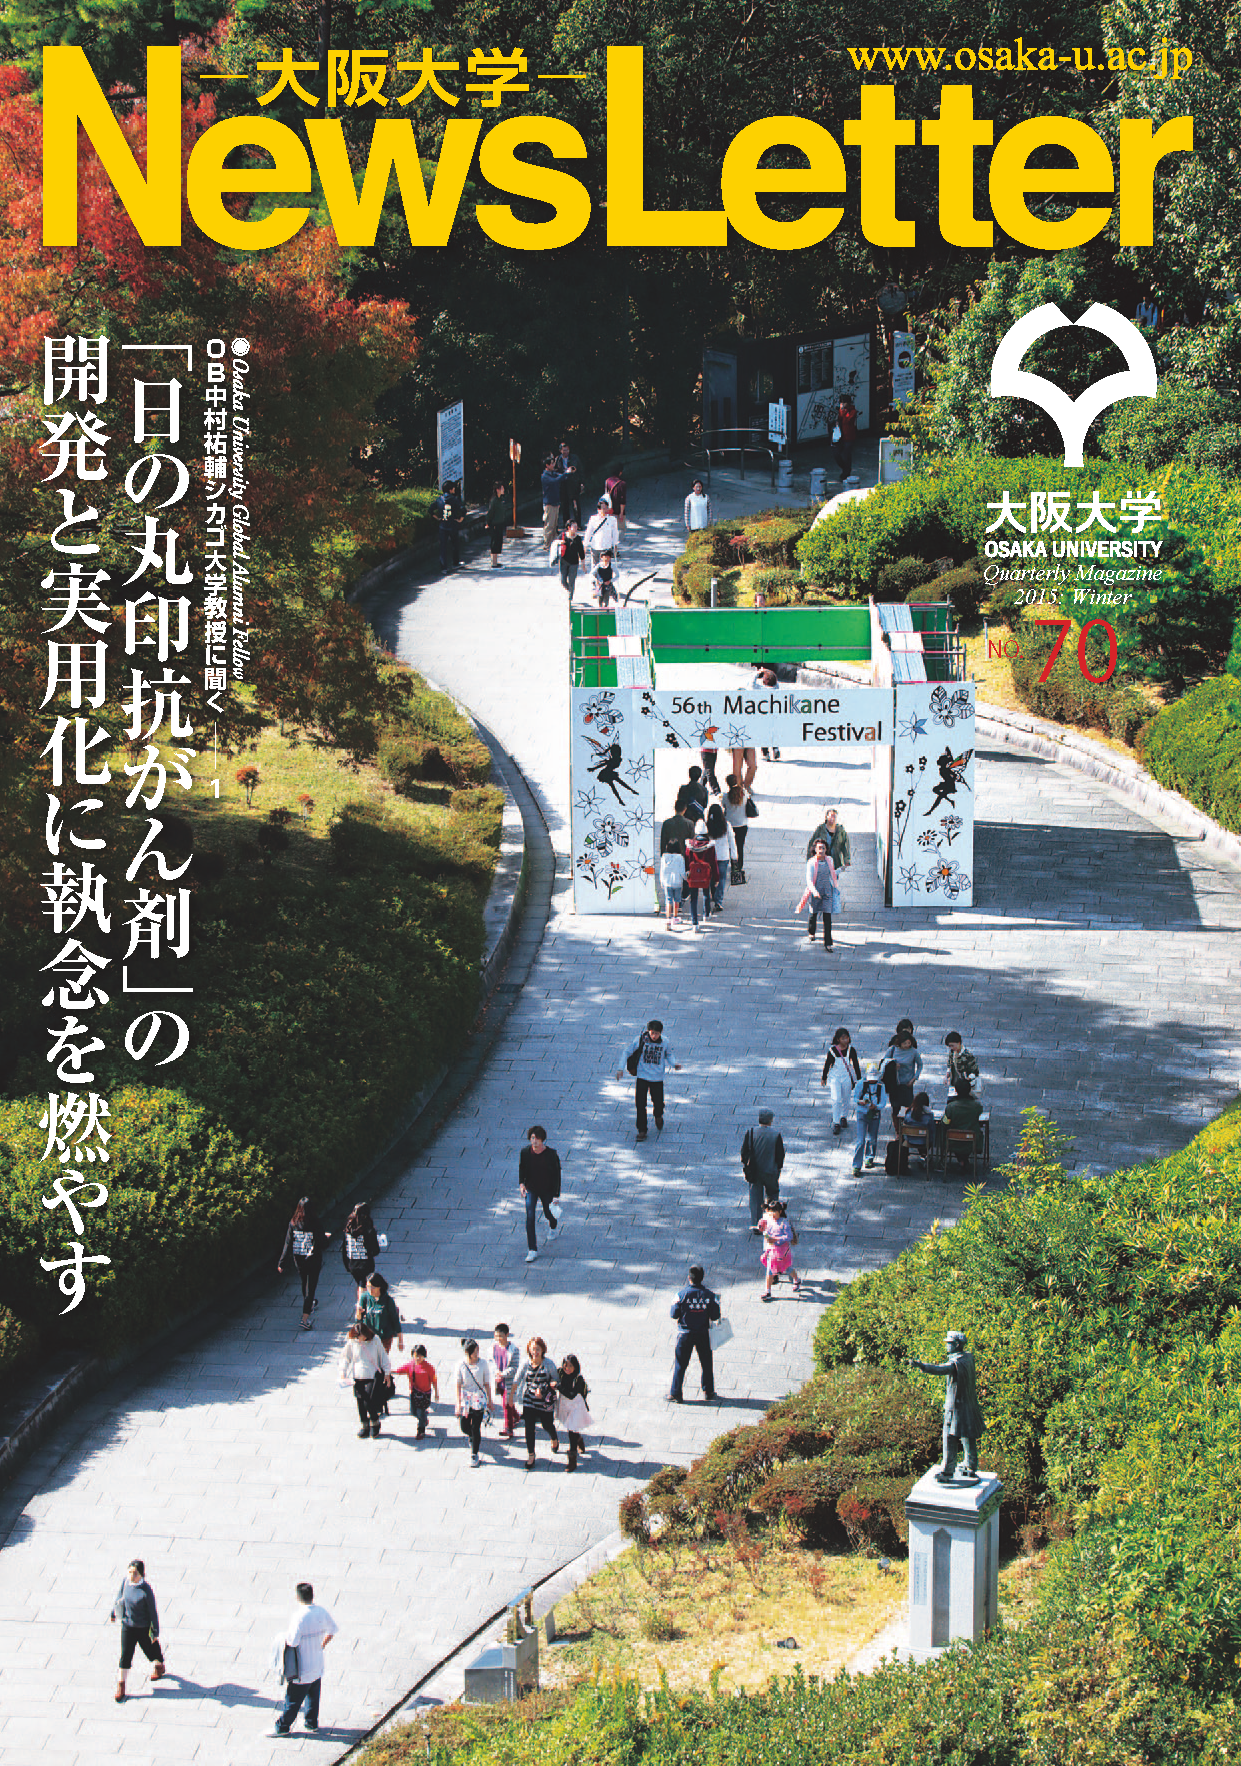 大阪大学ニューズレター2015冬号を発行しました